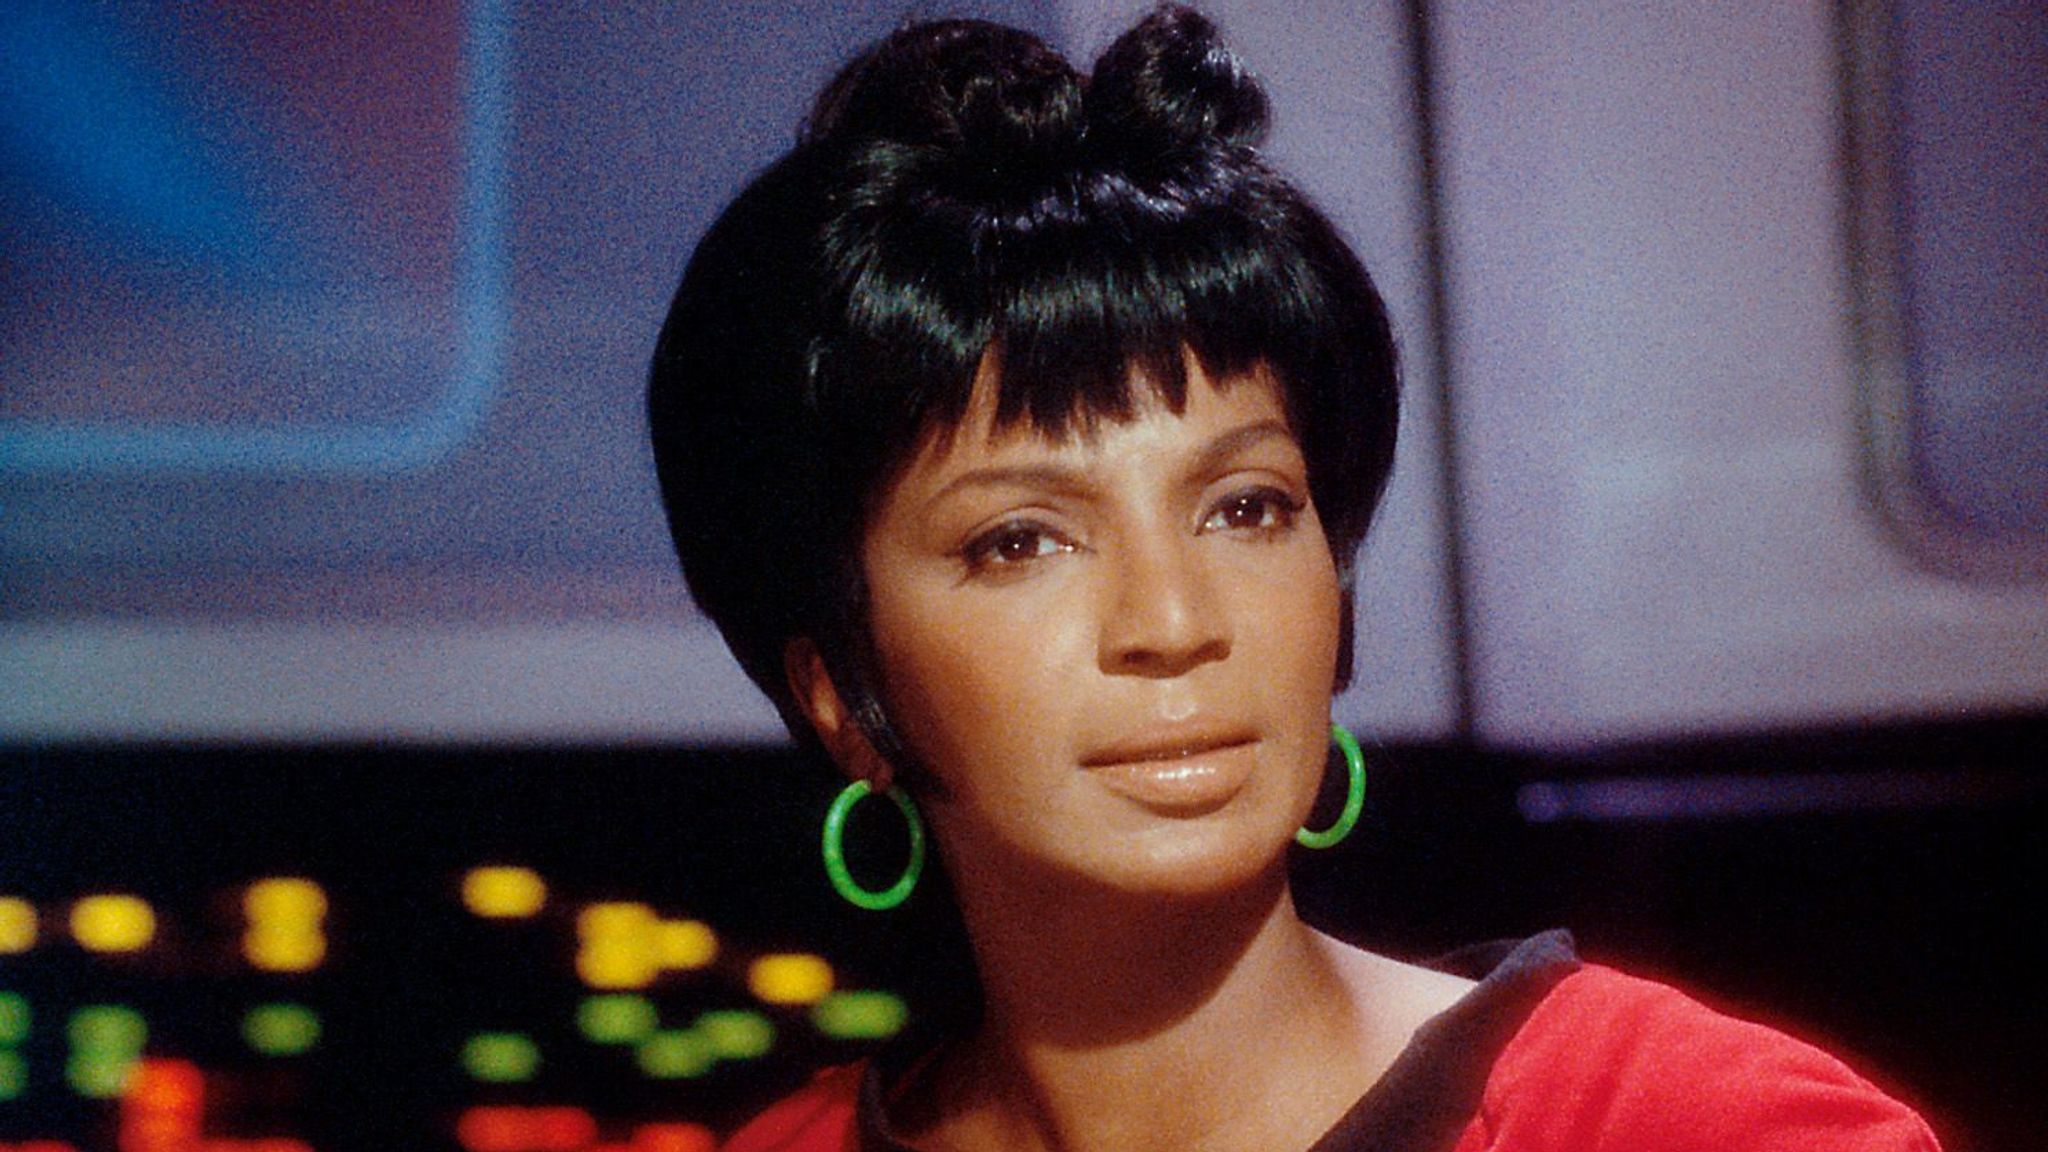 Lt Uhura in Star Trek dies